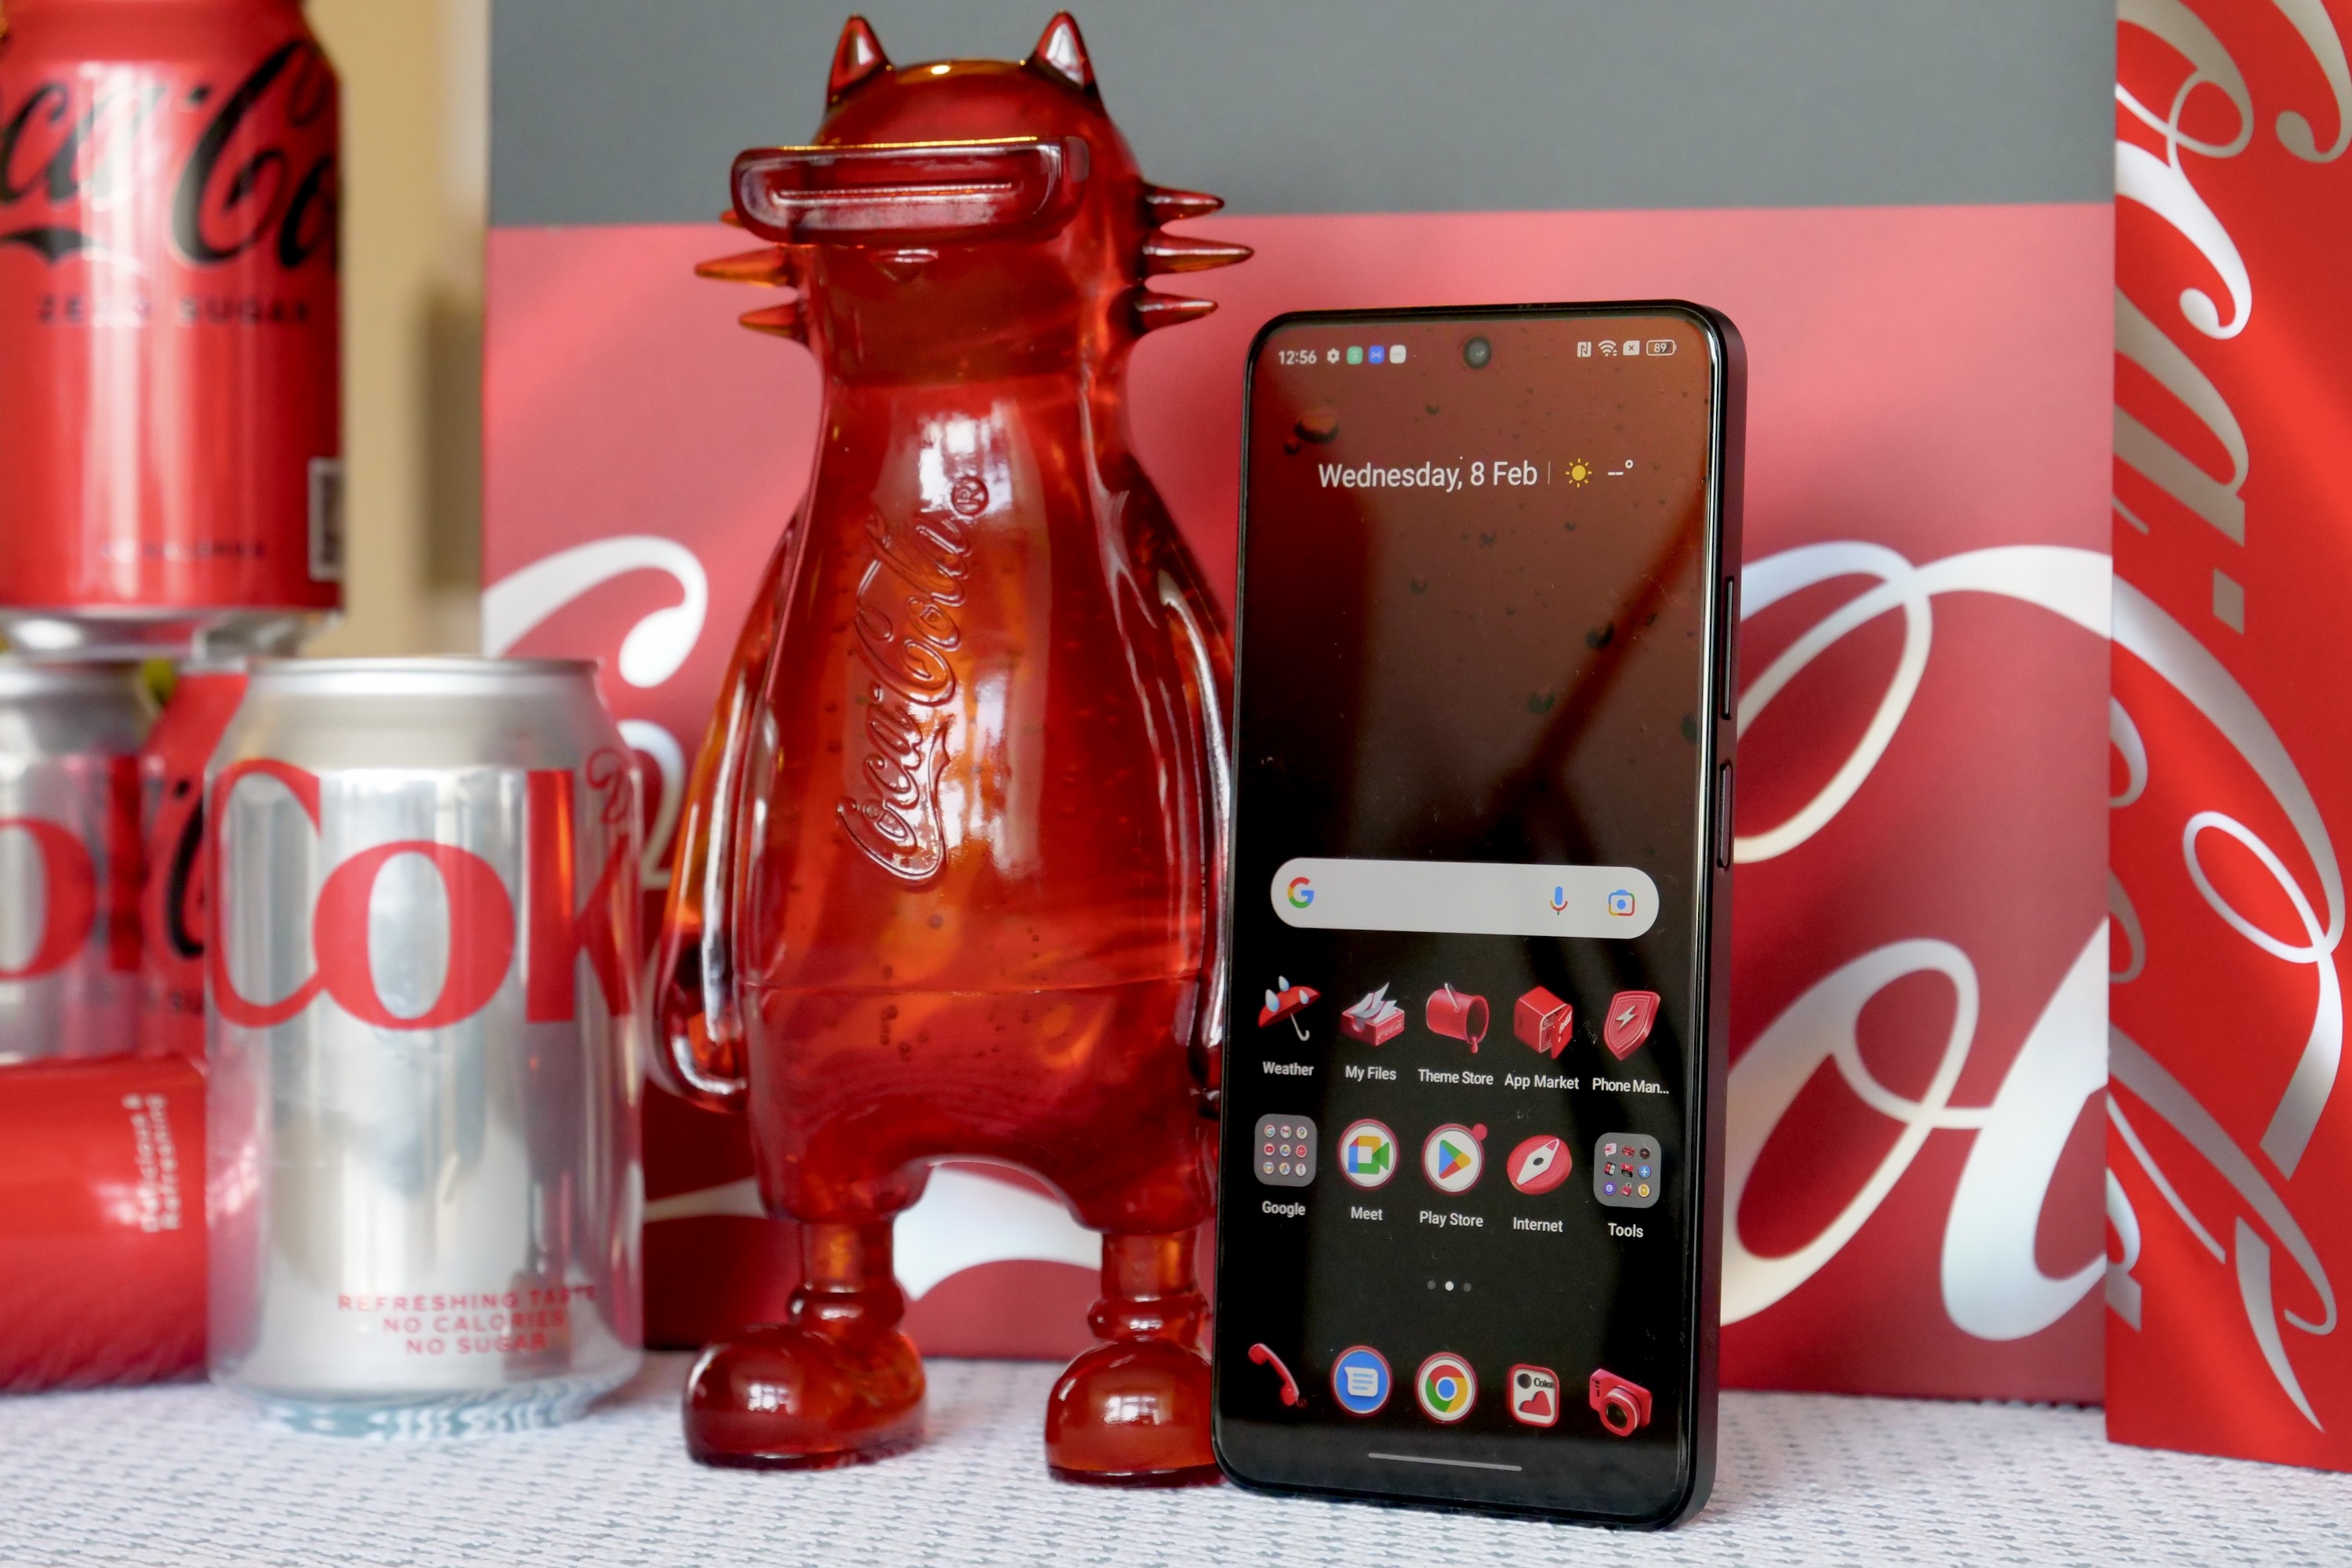 The Realme X Coca-Cola phone with the Realmeow statue.